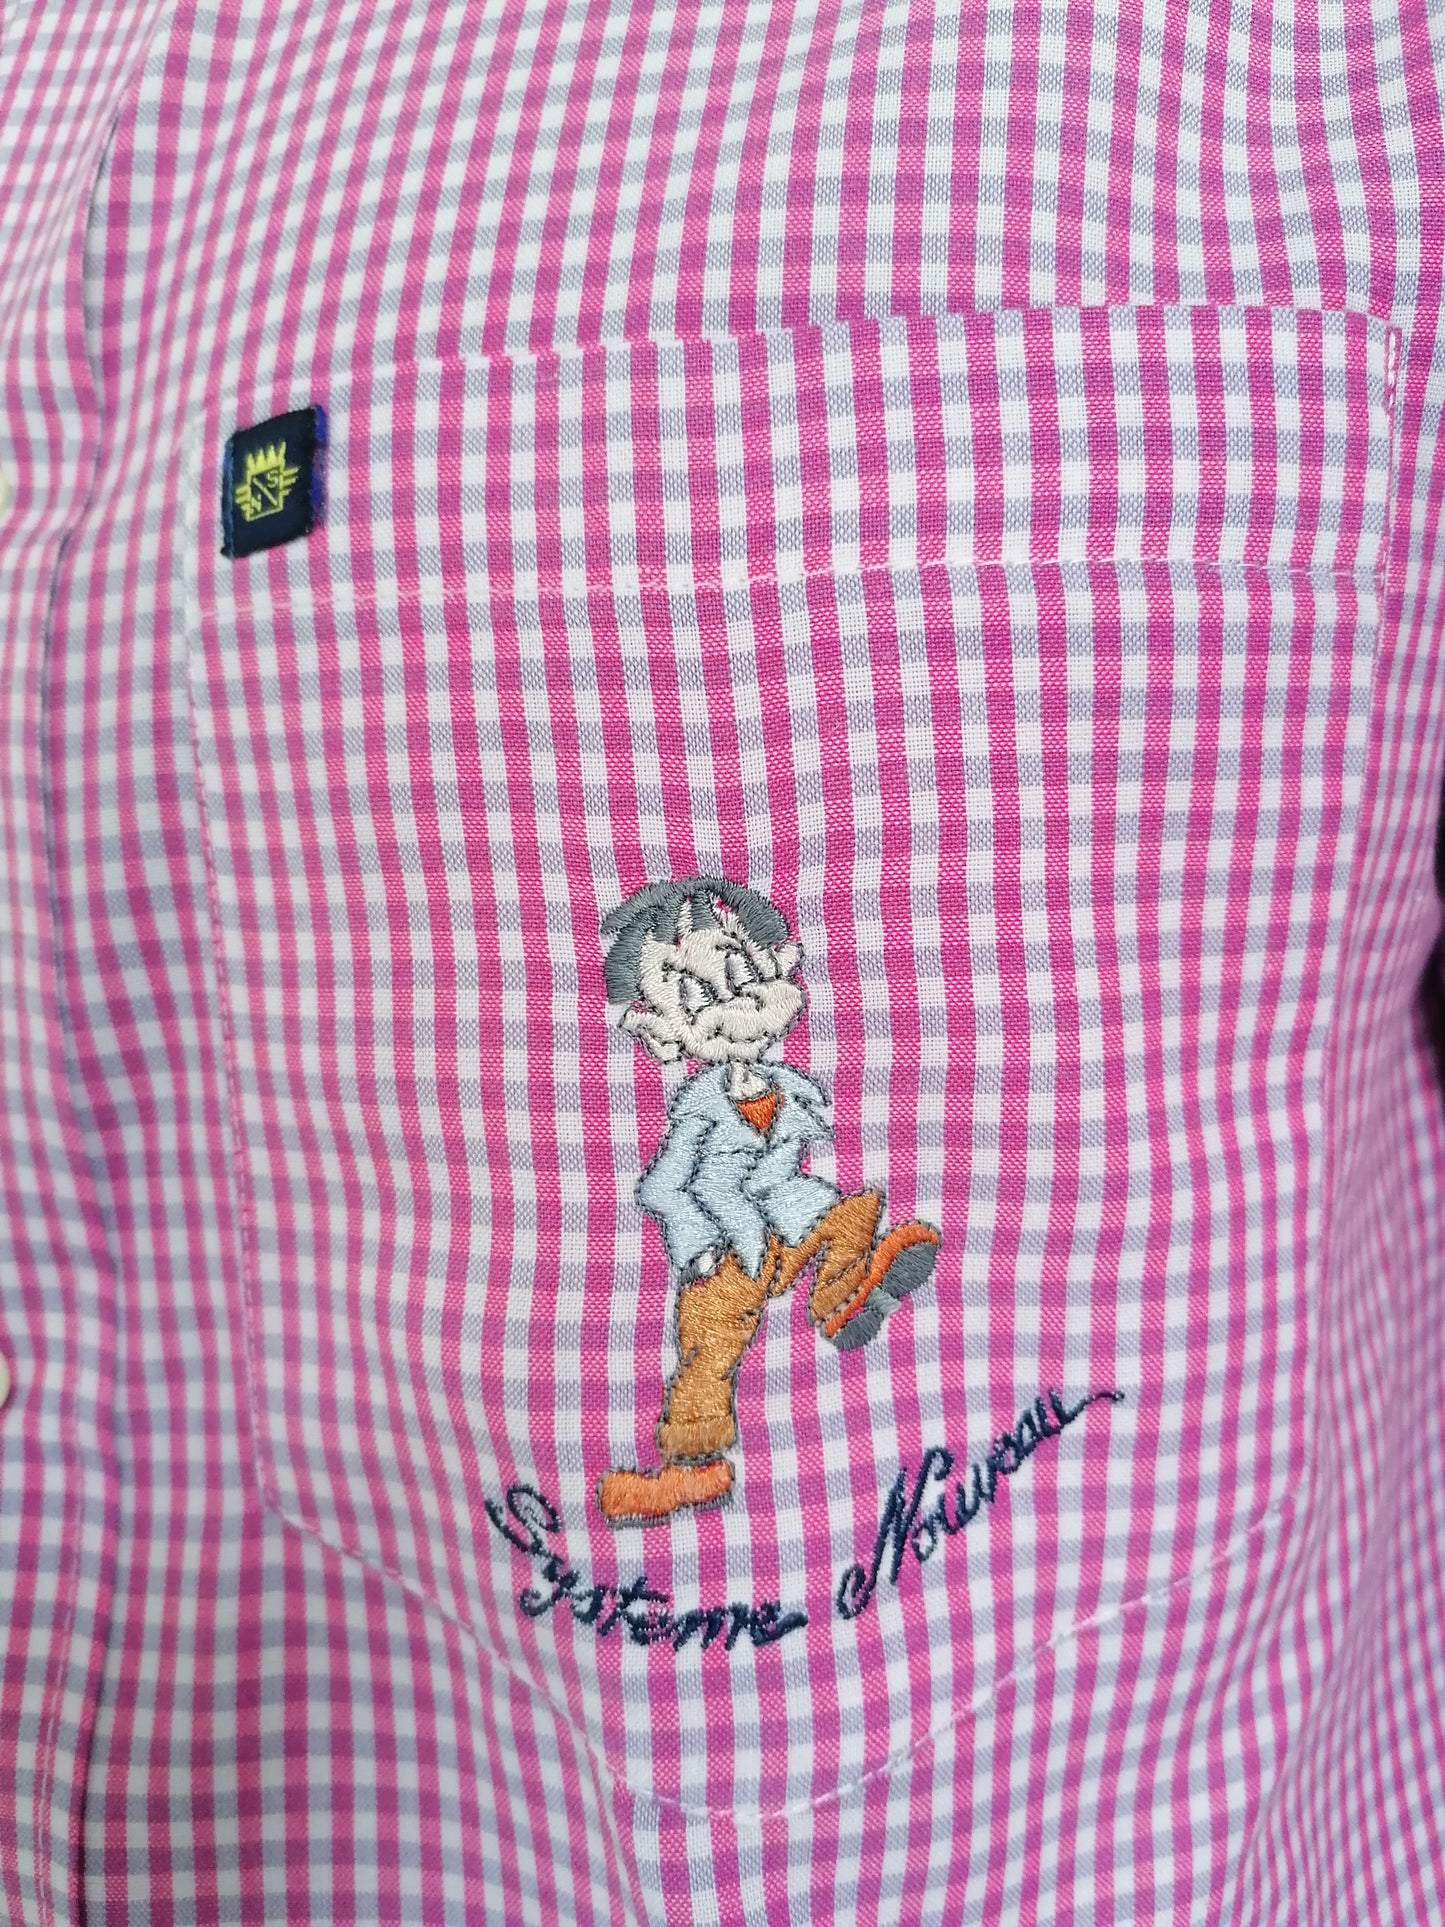 Vintage Systeme Nouveau overhemd. Roze Wit geblokt. Maat L.